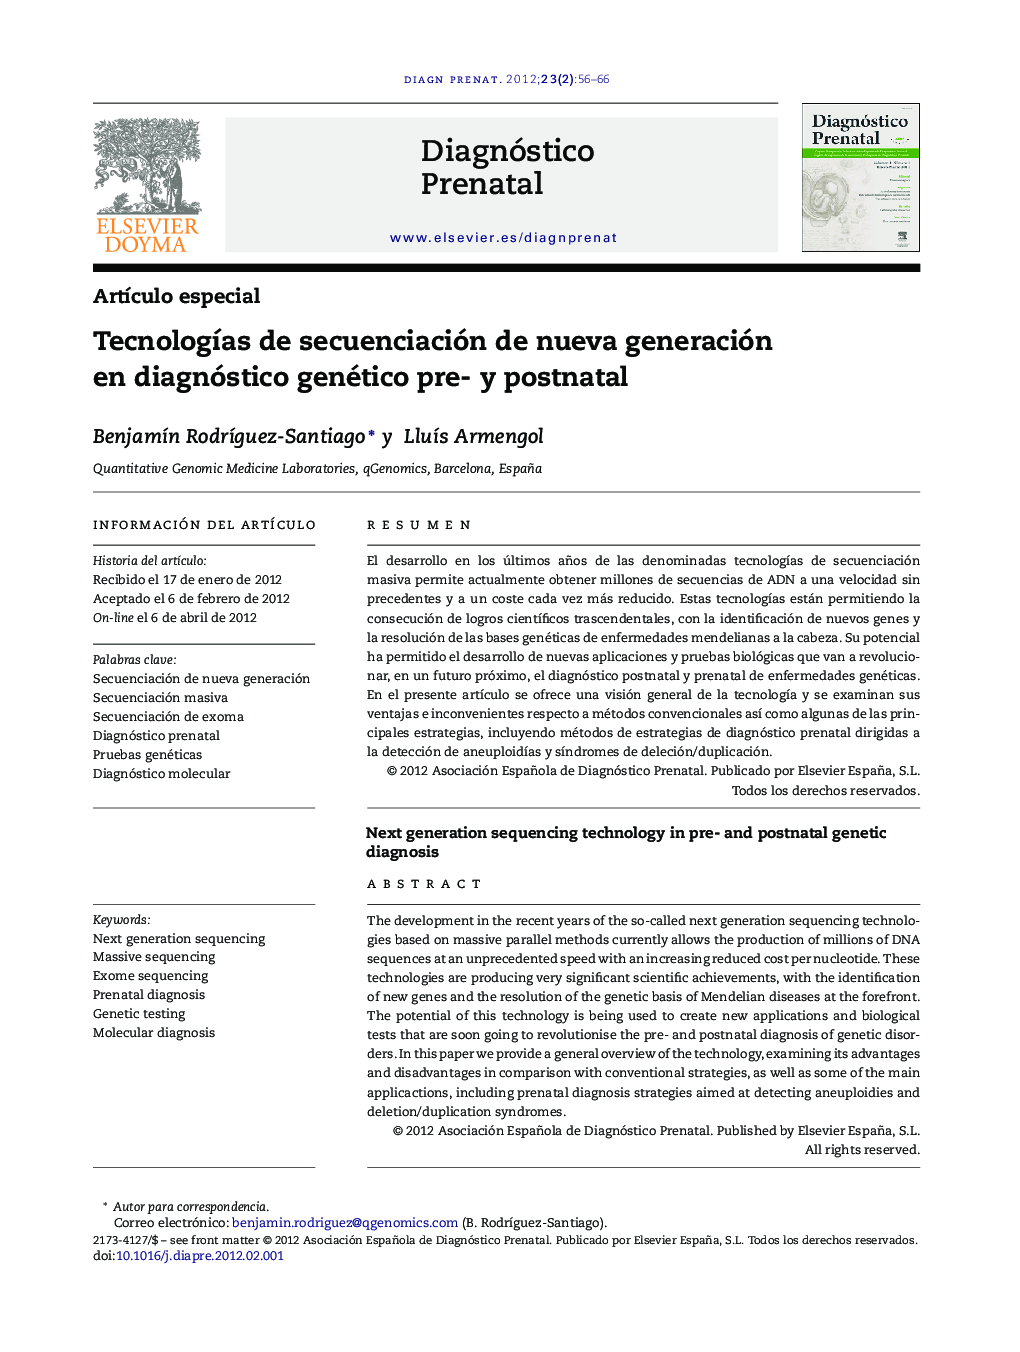 Tecnologías de secuenciación de nueva generación en diagnóstico genético pre- y postnatal